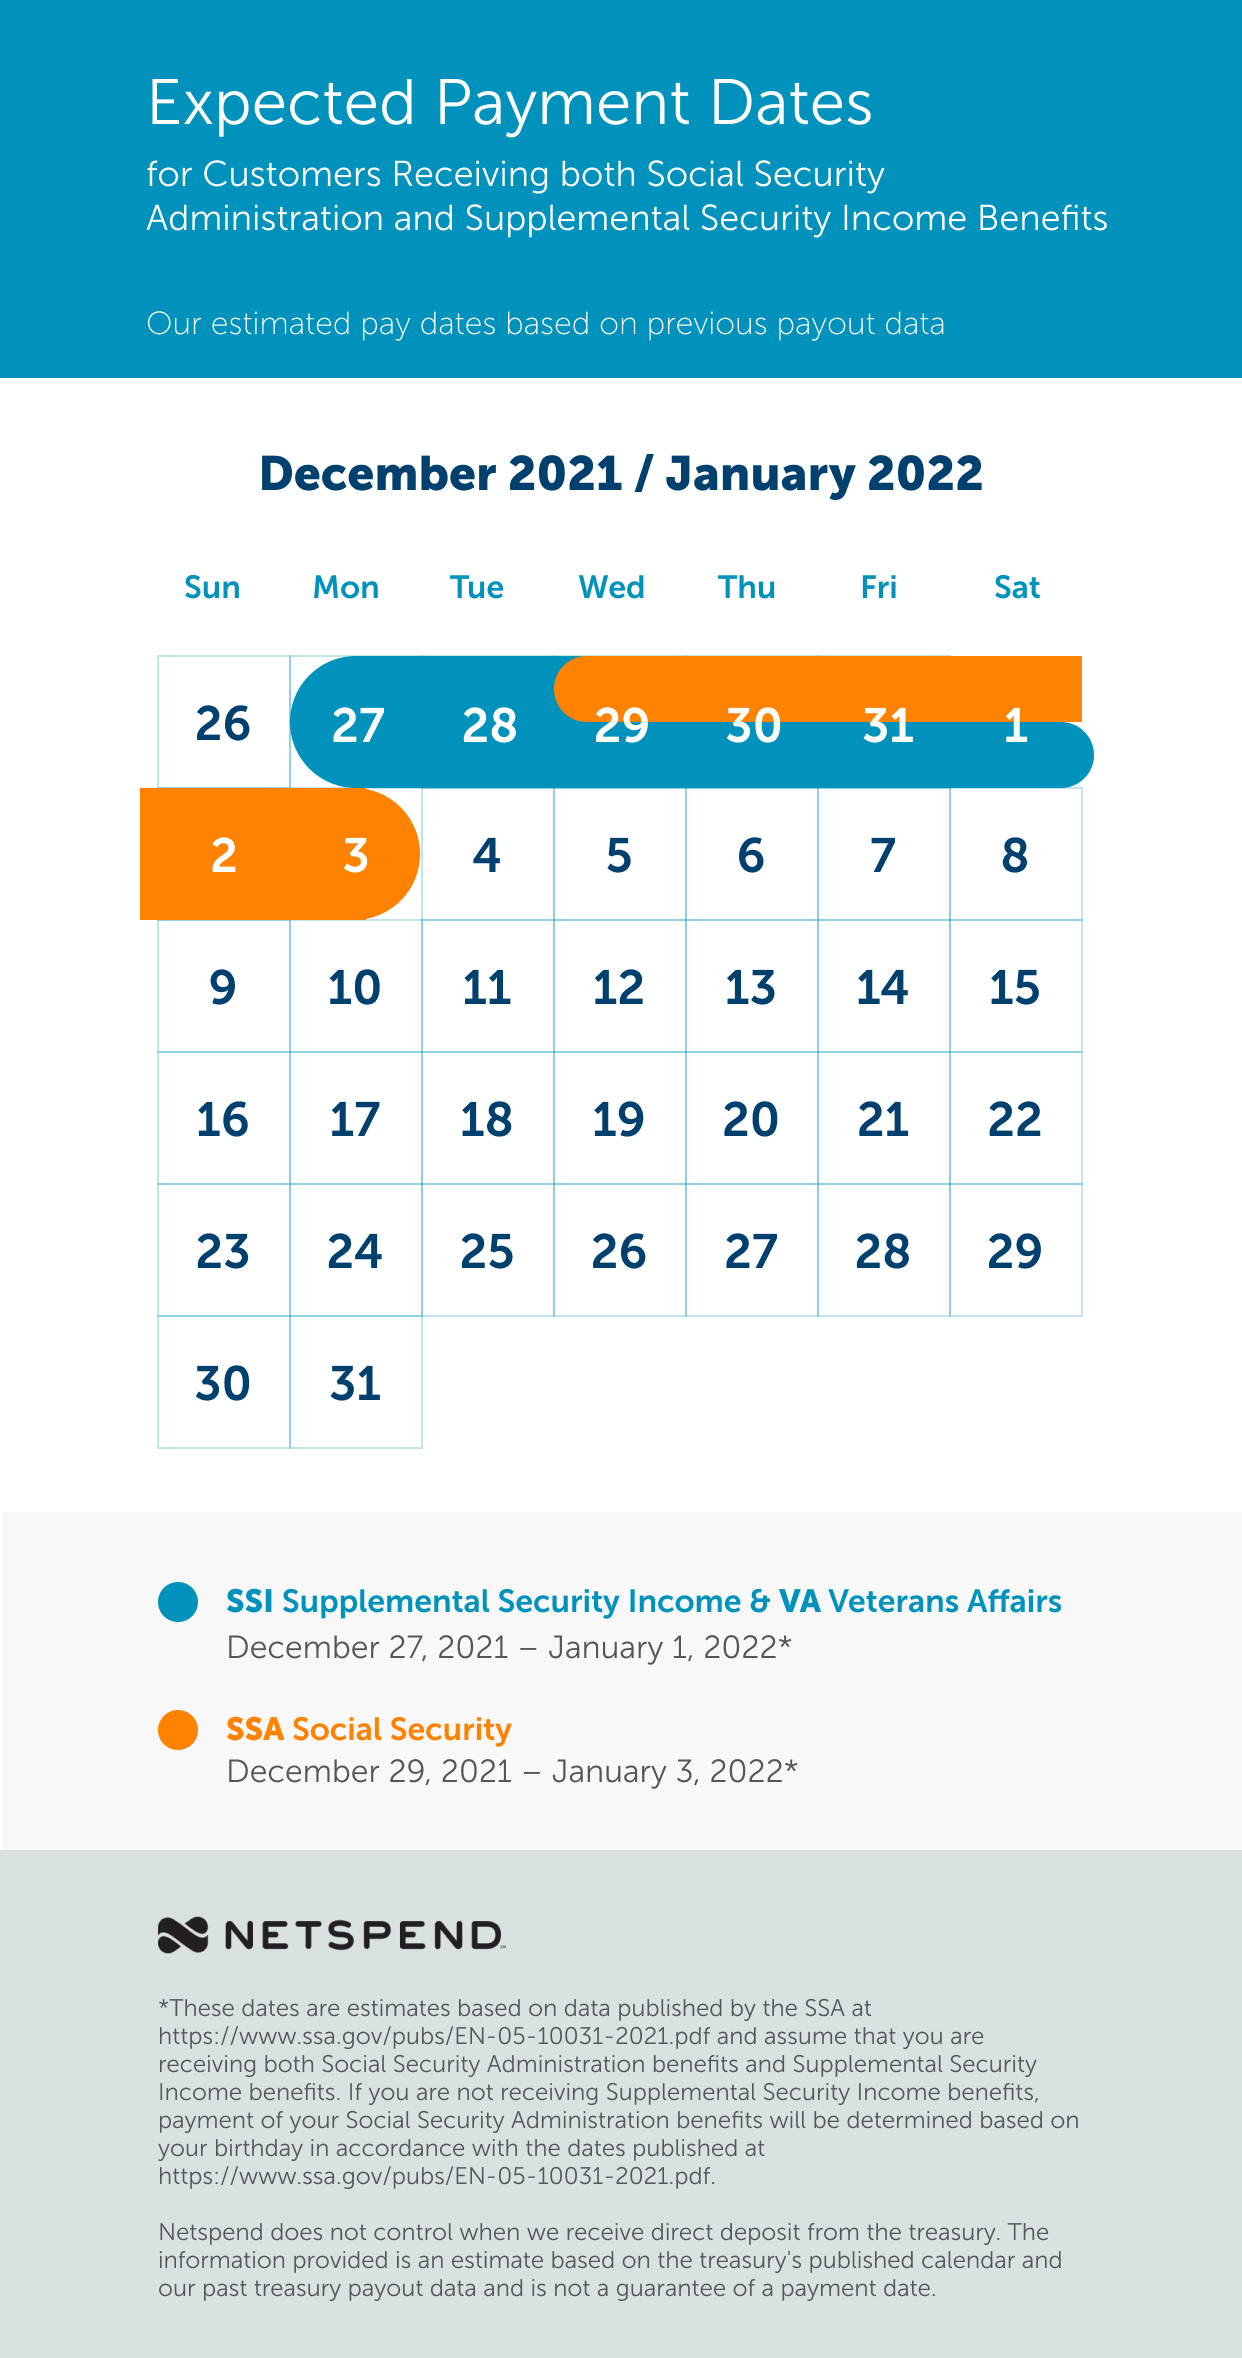 Ssa 2022 Calendar Benefits Payment Schedule: December 2021 - January 2022